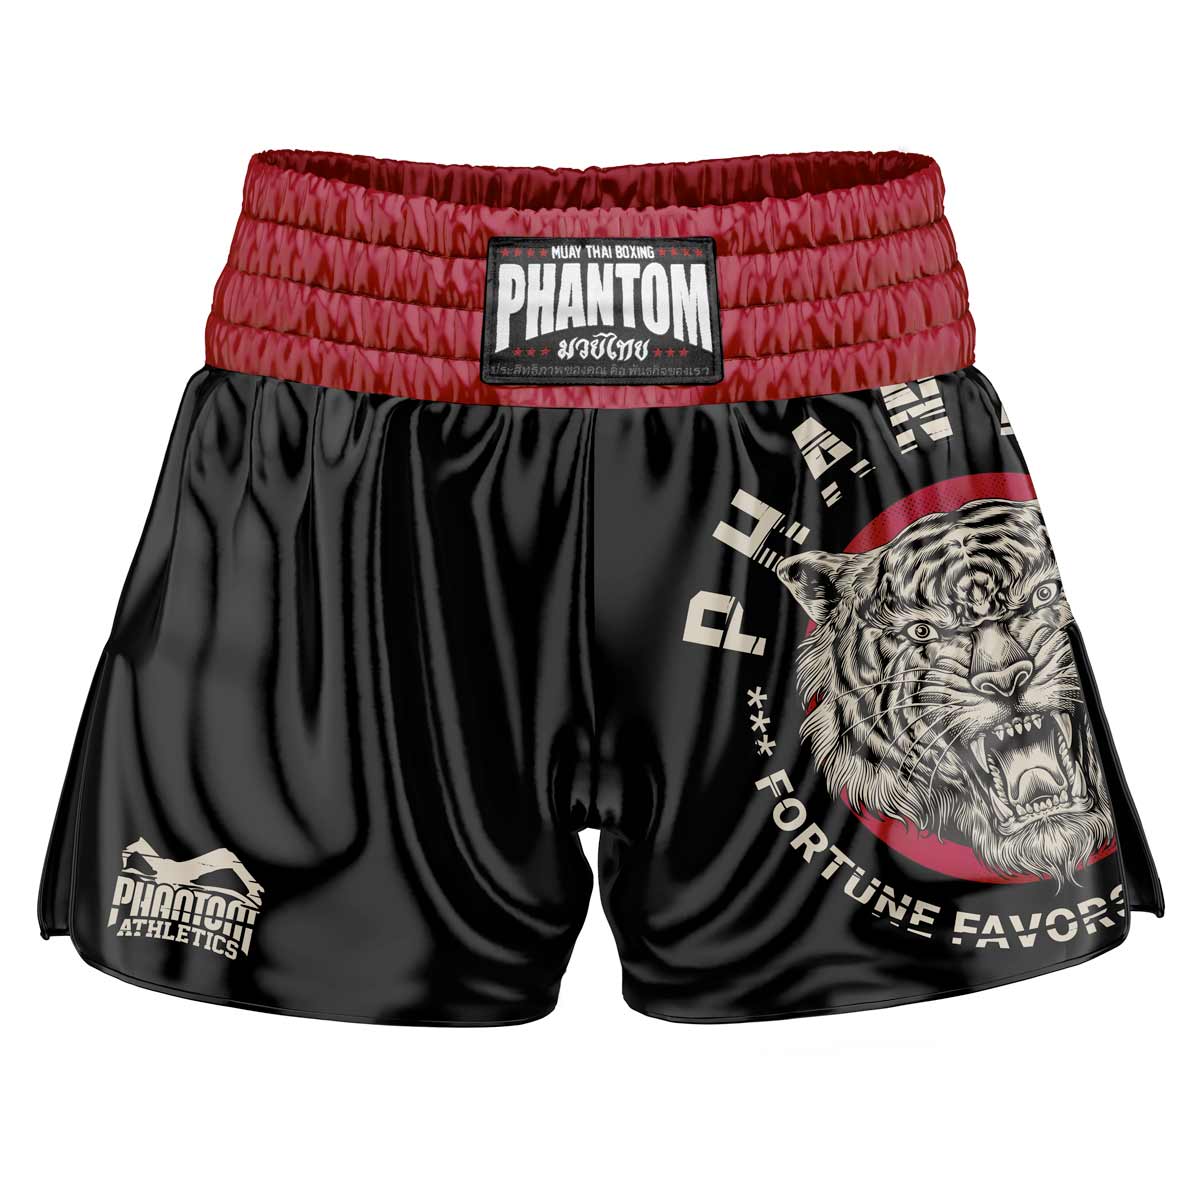 Phantom Muay Thai shorts i svart. Old school satintyg och vår populära Tiger Unit-design ger dig en originell Thailand-känsla. I vanlig Phantom Athletics kvalitet. Perfekt för din thaiboxningsträning och tävling.